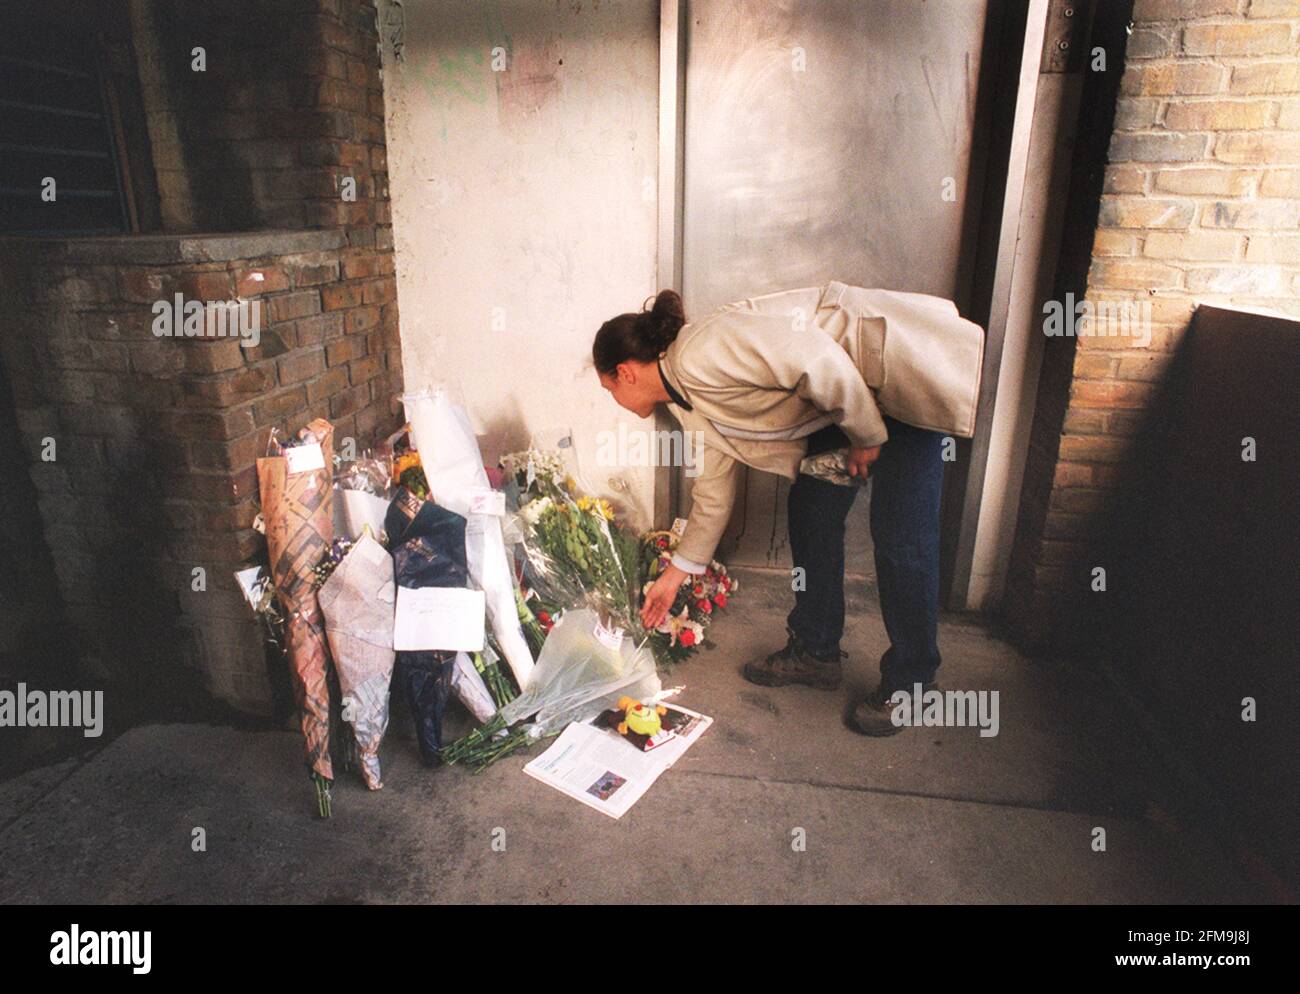 Mord an der 10-jährigen Damilola Taylor in Peckham Dez 2000 Rebecca Jackson vom Ealing Broadway, legt Blumen auf den wachsenden Haufen von Blumengeluhen, an der Stelle, an der Damilola starb. Stockfoto